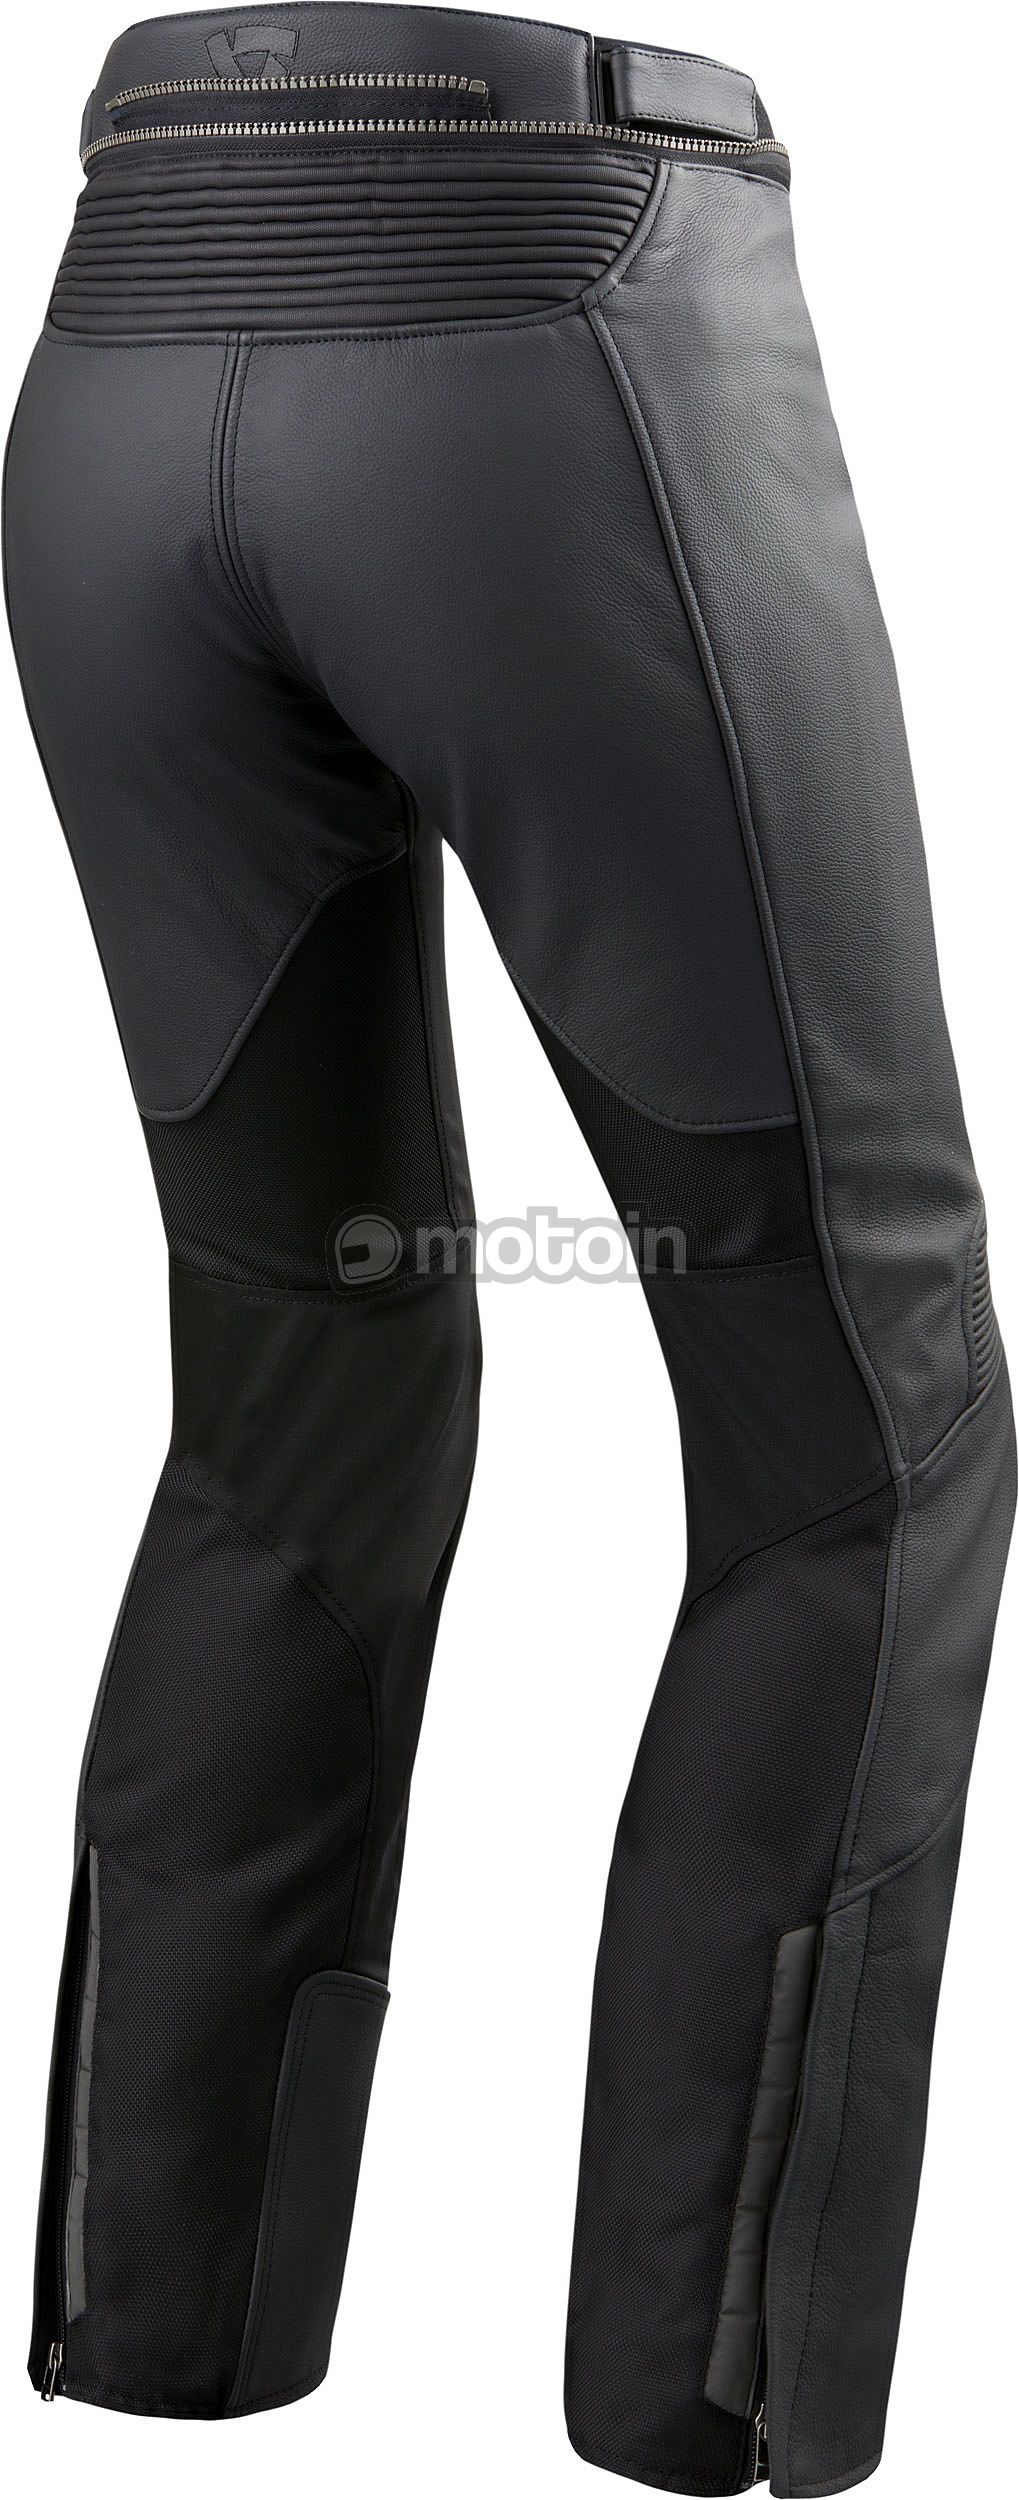 Revit Ignition 3, leather-textile pants women - motoin.de